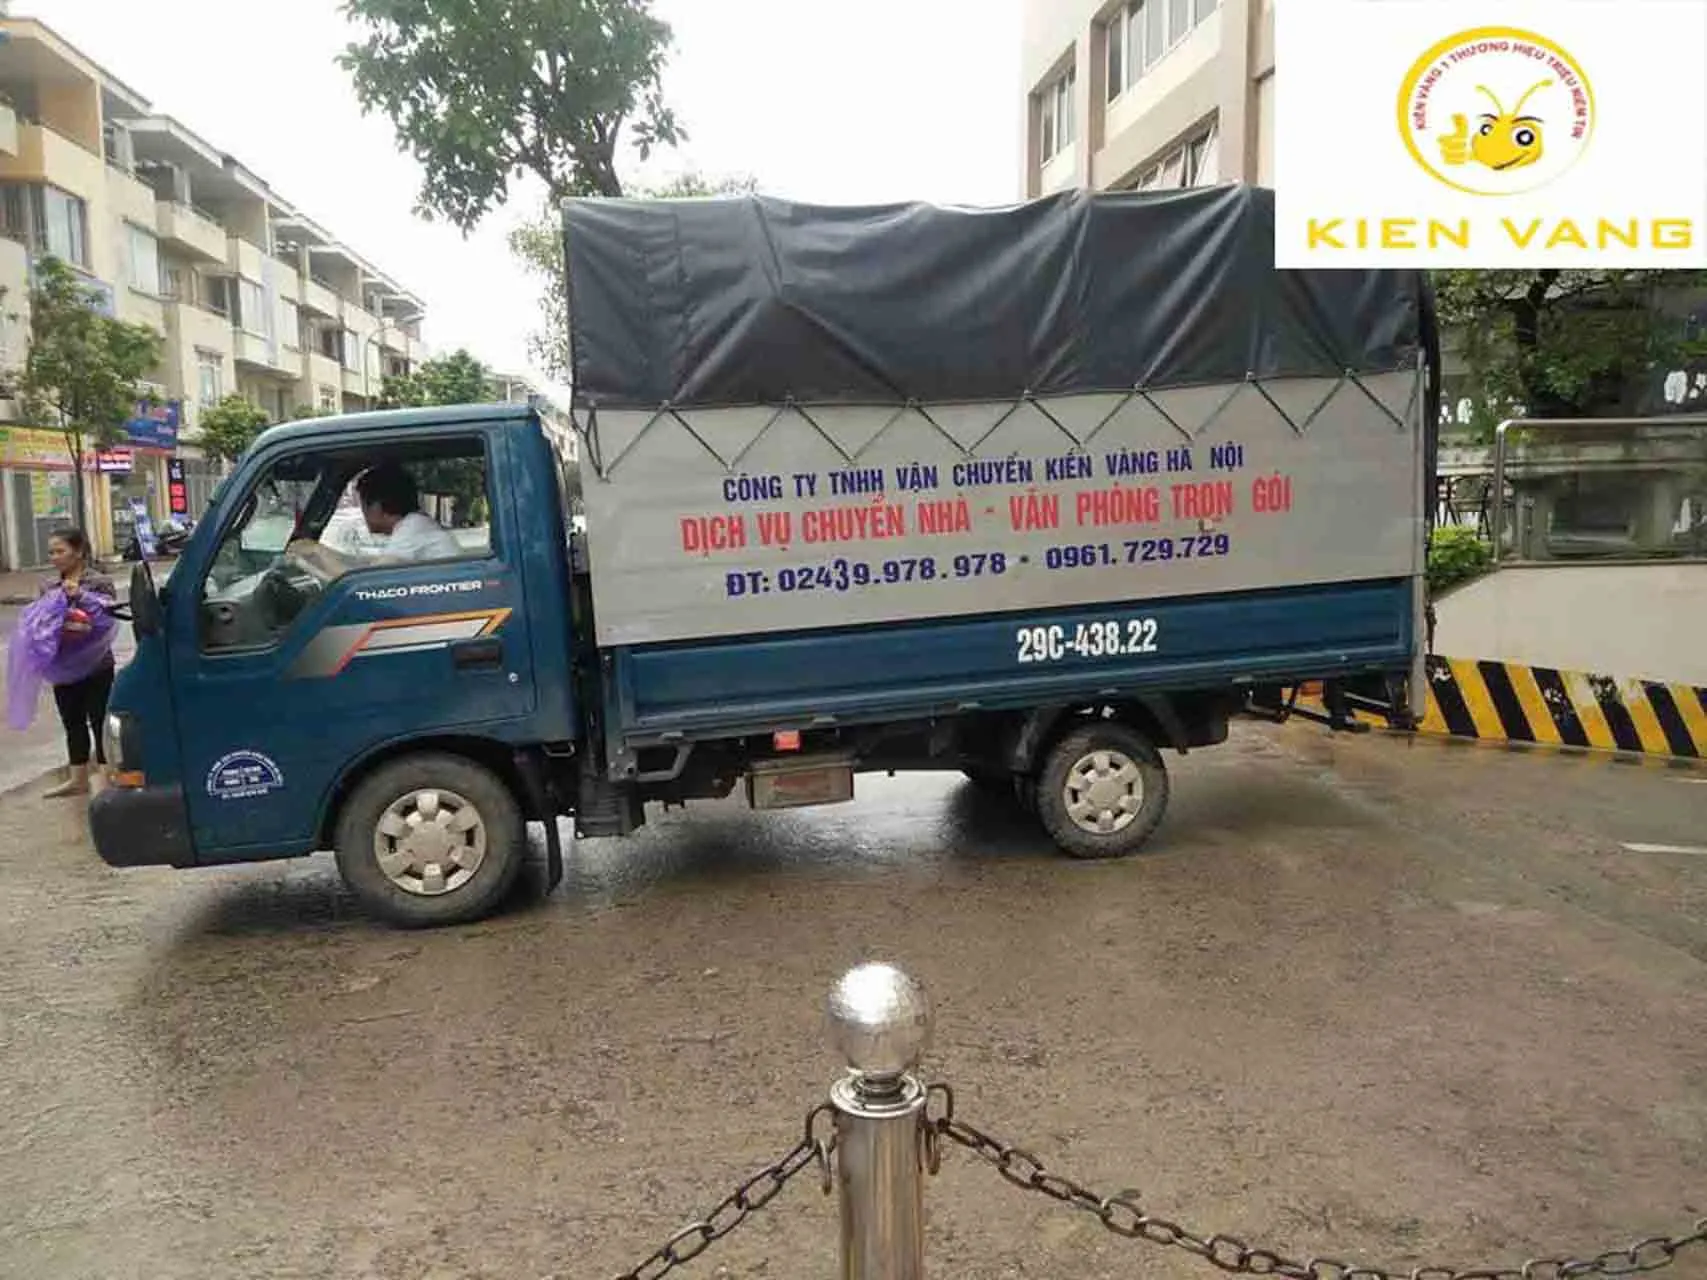 Taxi tải Kiến Vàng chuyển nhà Hà Nội